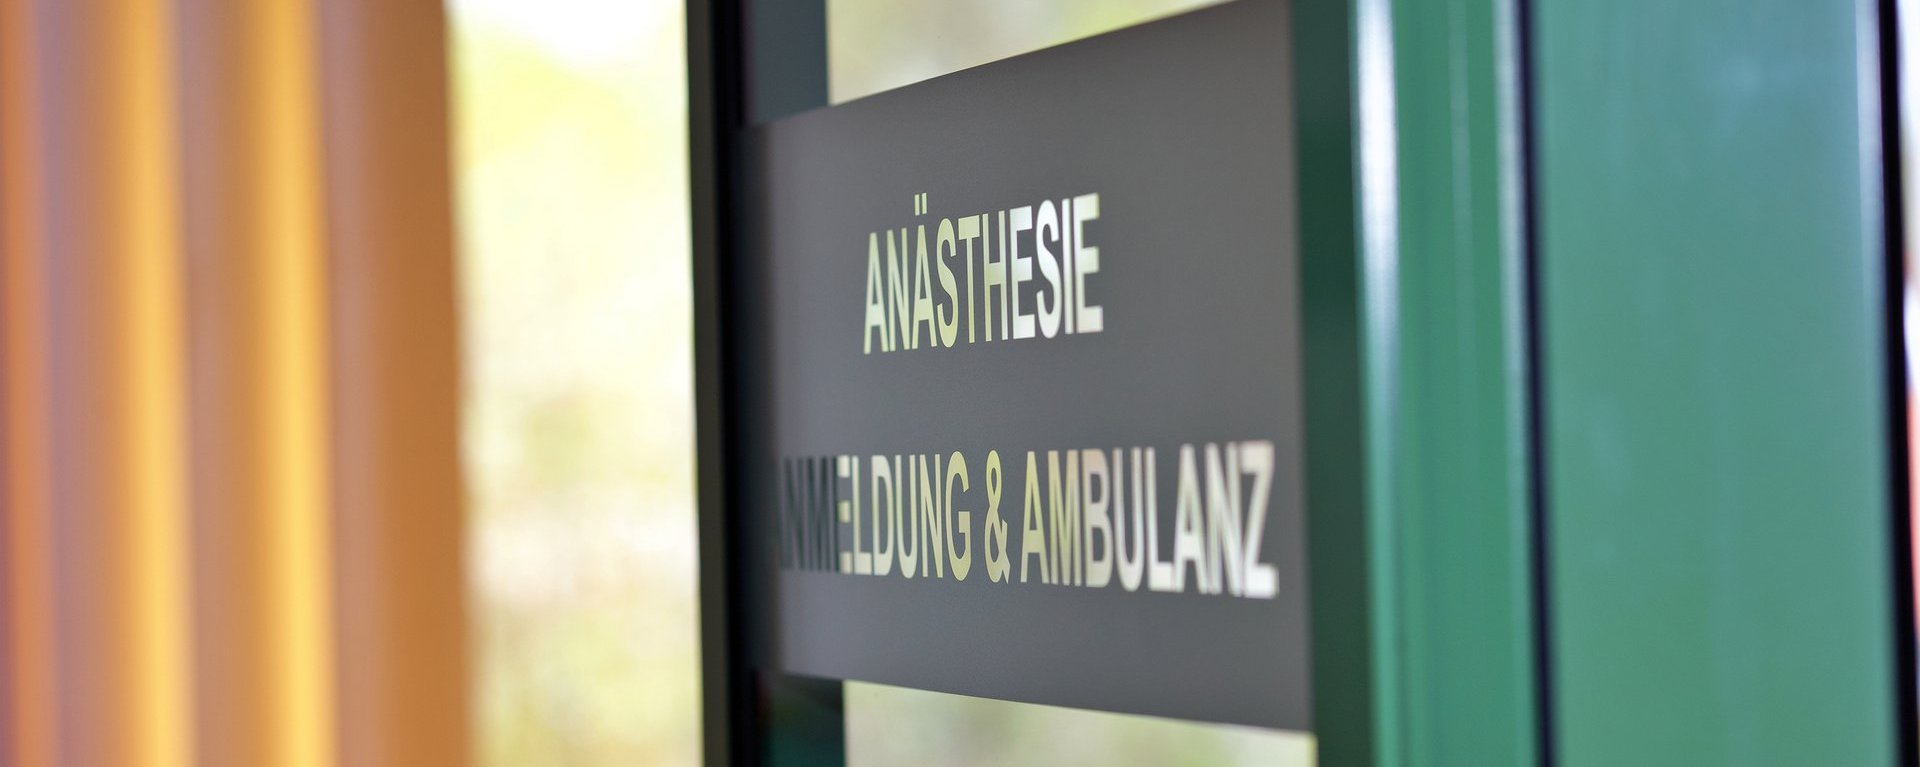 Eingang zur Anmeldung und Ambulanz der Anästhesie